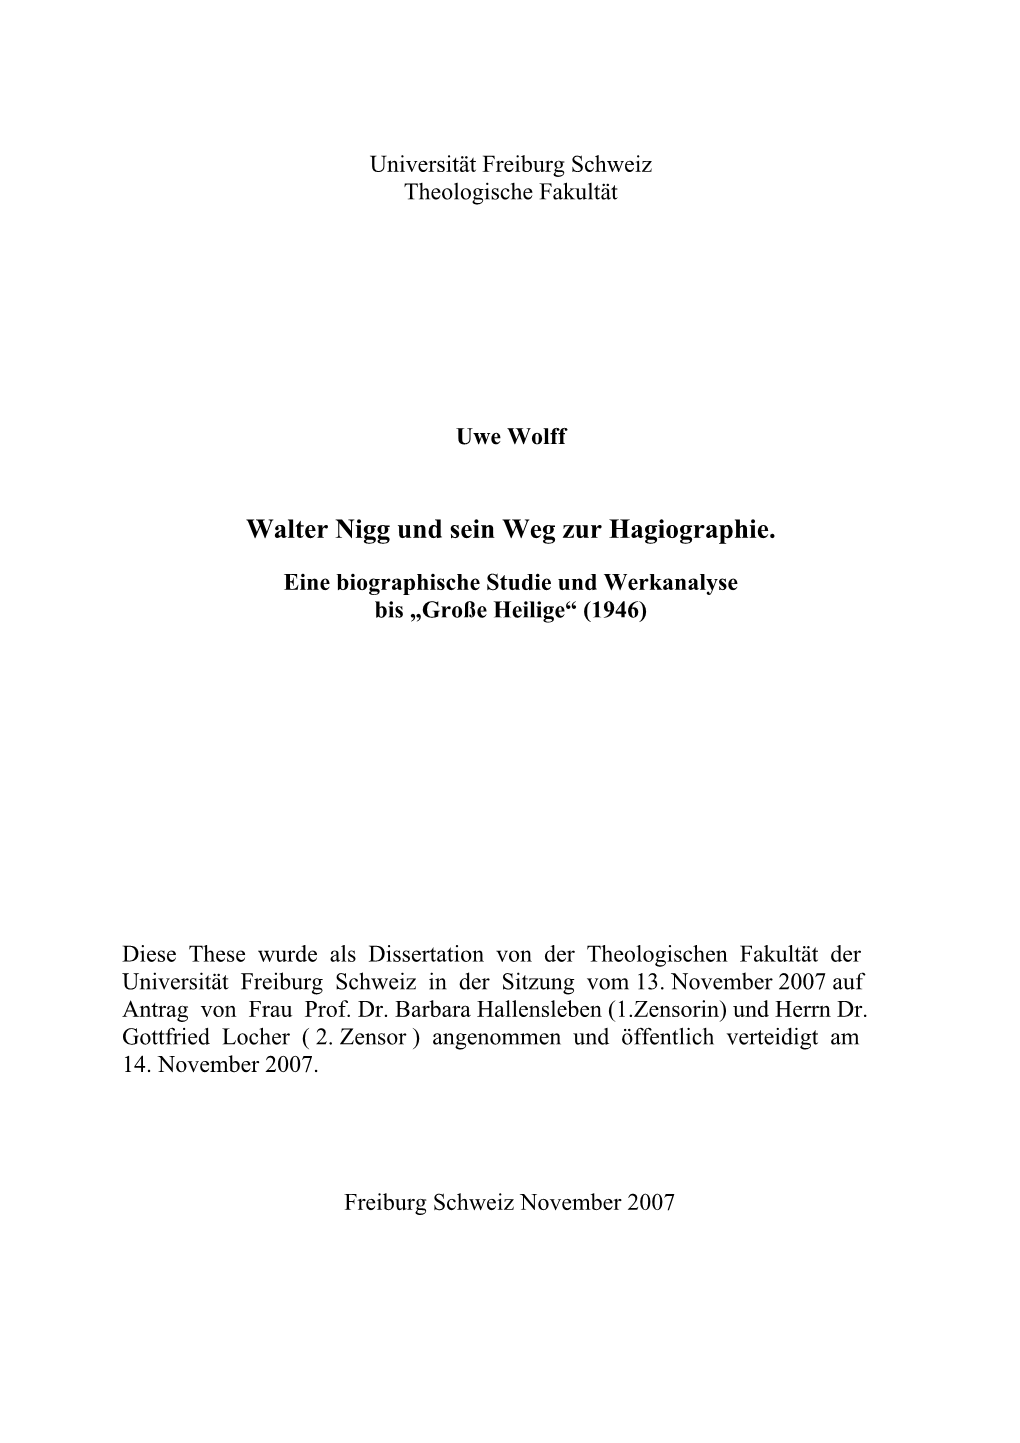 Walter Nigg Und Sein Weg Zur Hagiographie